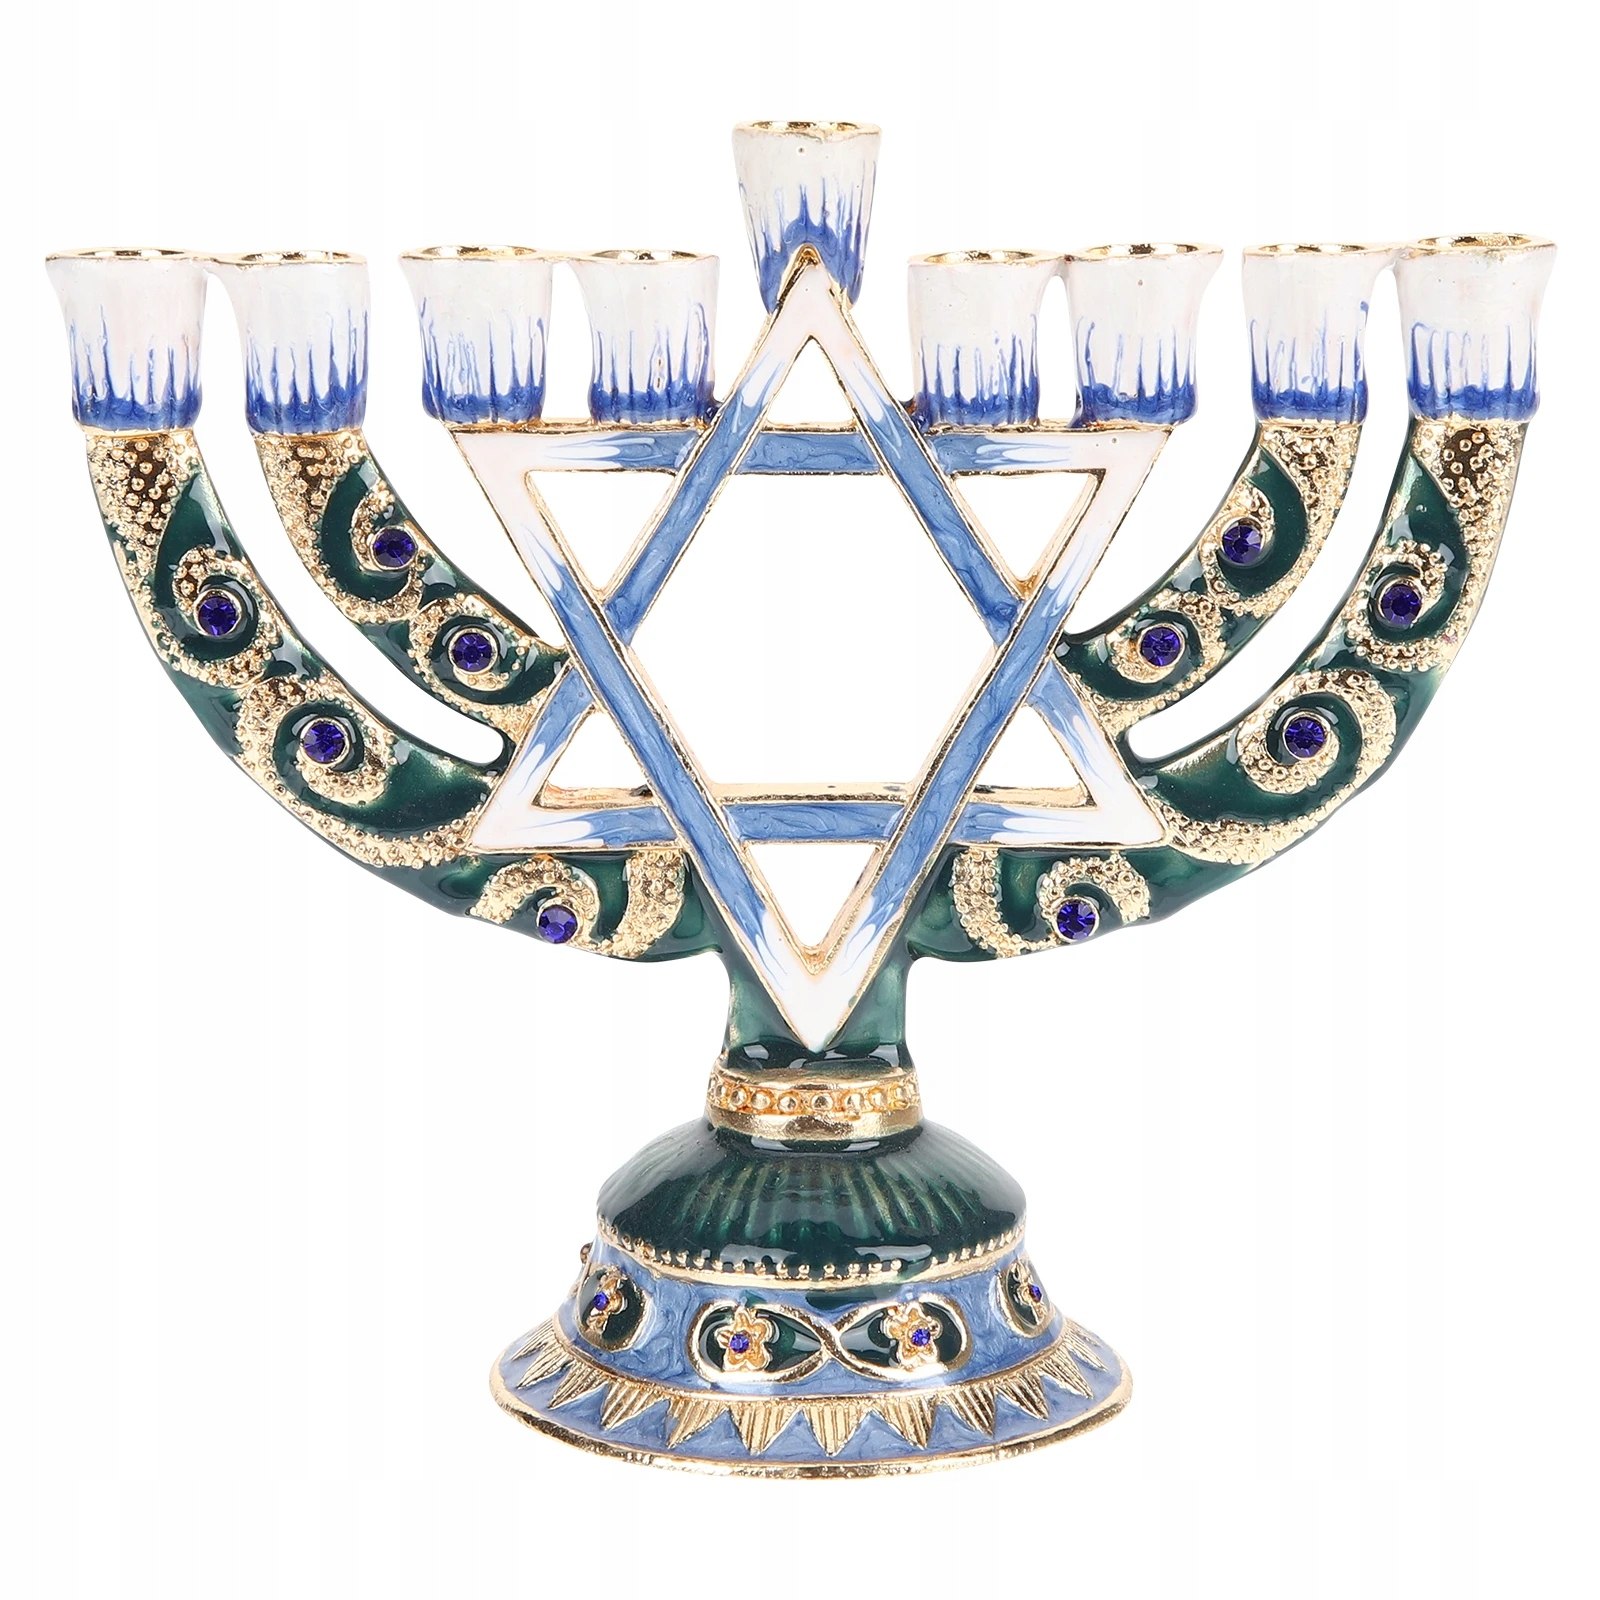 Dekoracja Chanuka Retro świeczniki żydowskie